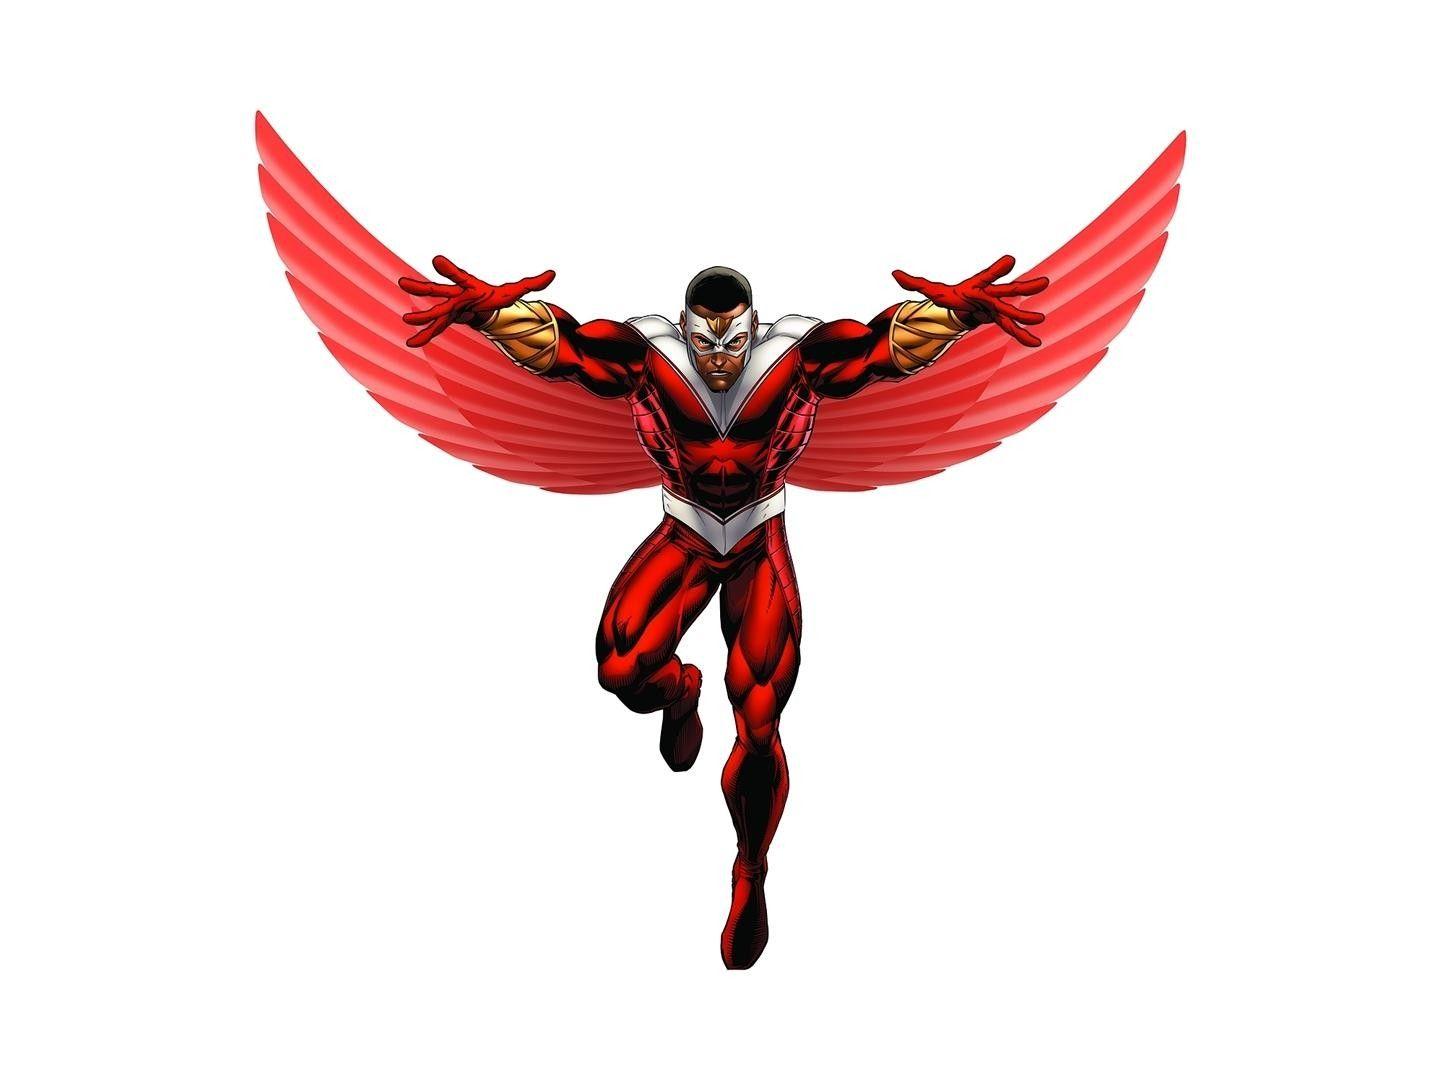 Falcon spreading his wings HD desktop wallpaper, Widescreen, High